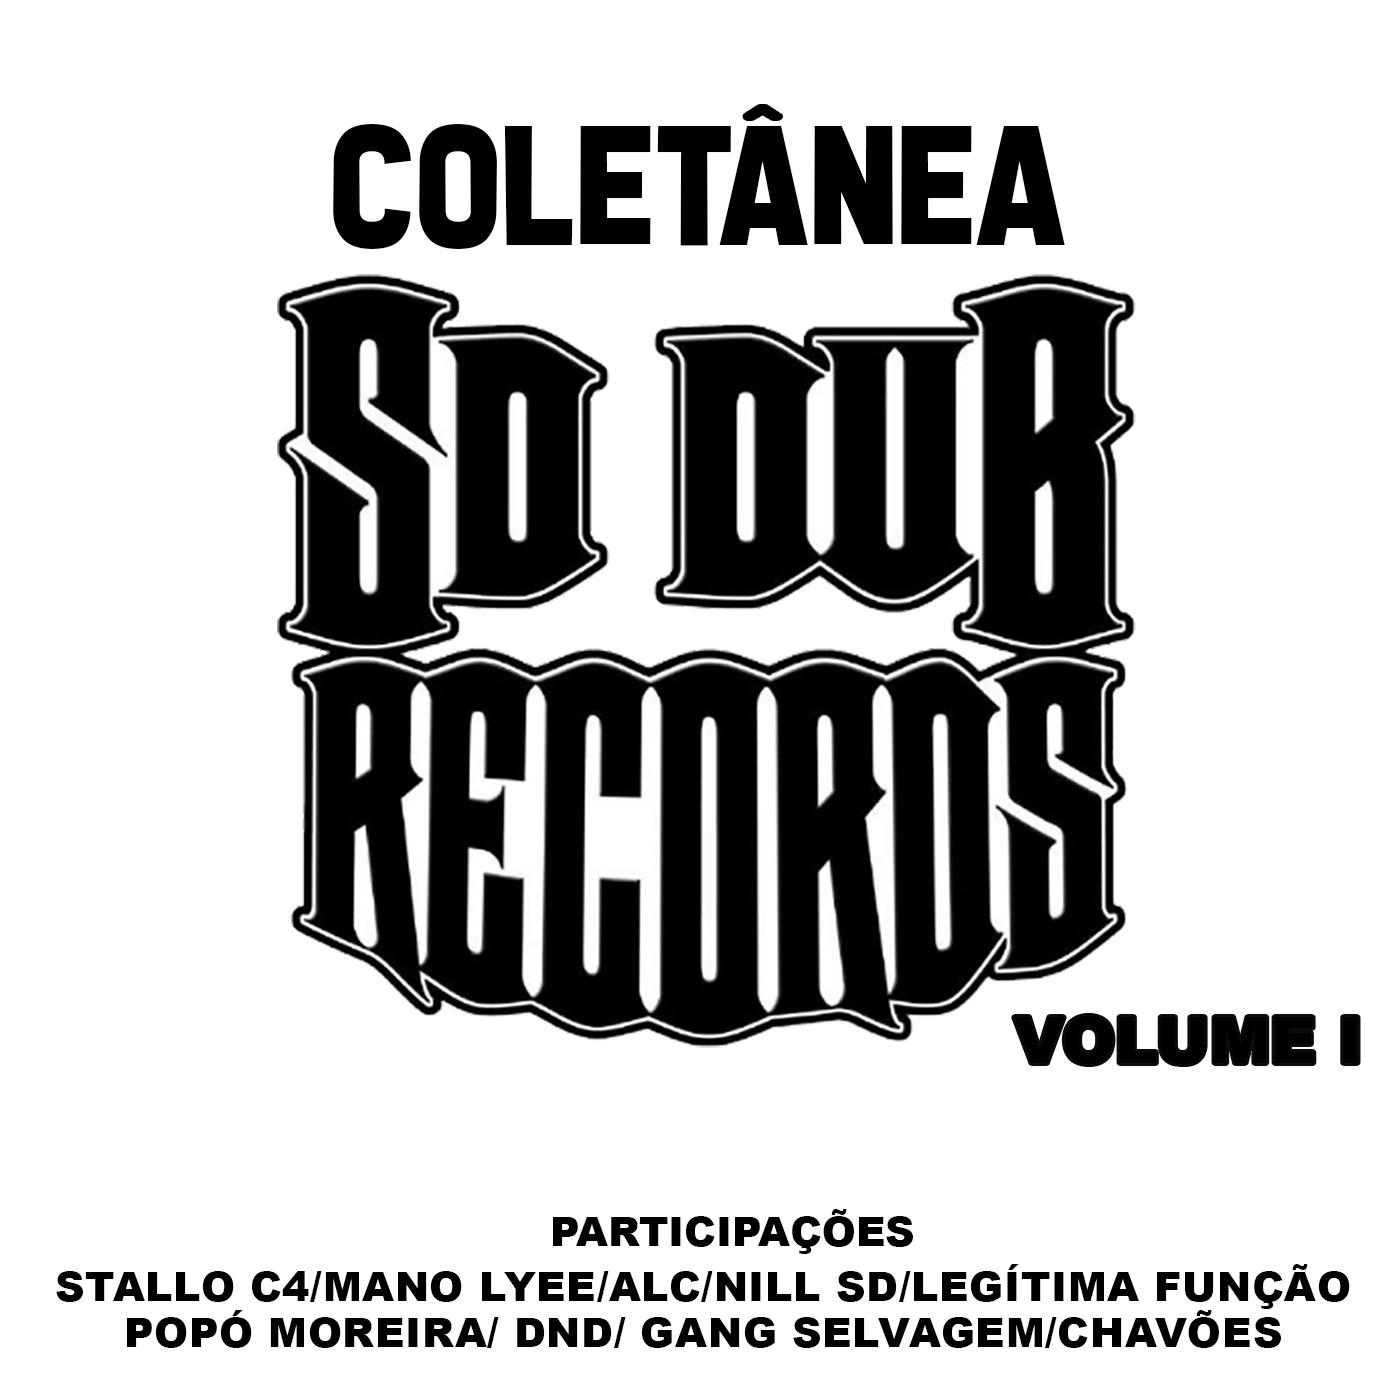 Colet nea Sd Dub Records